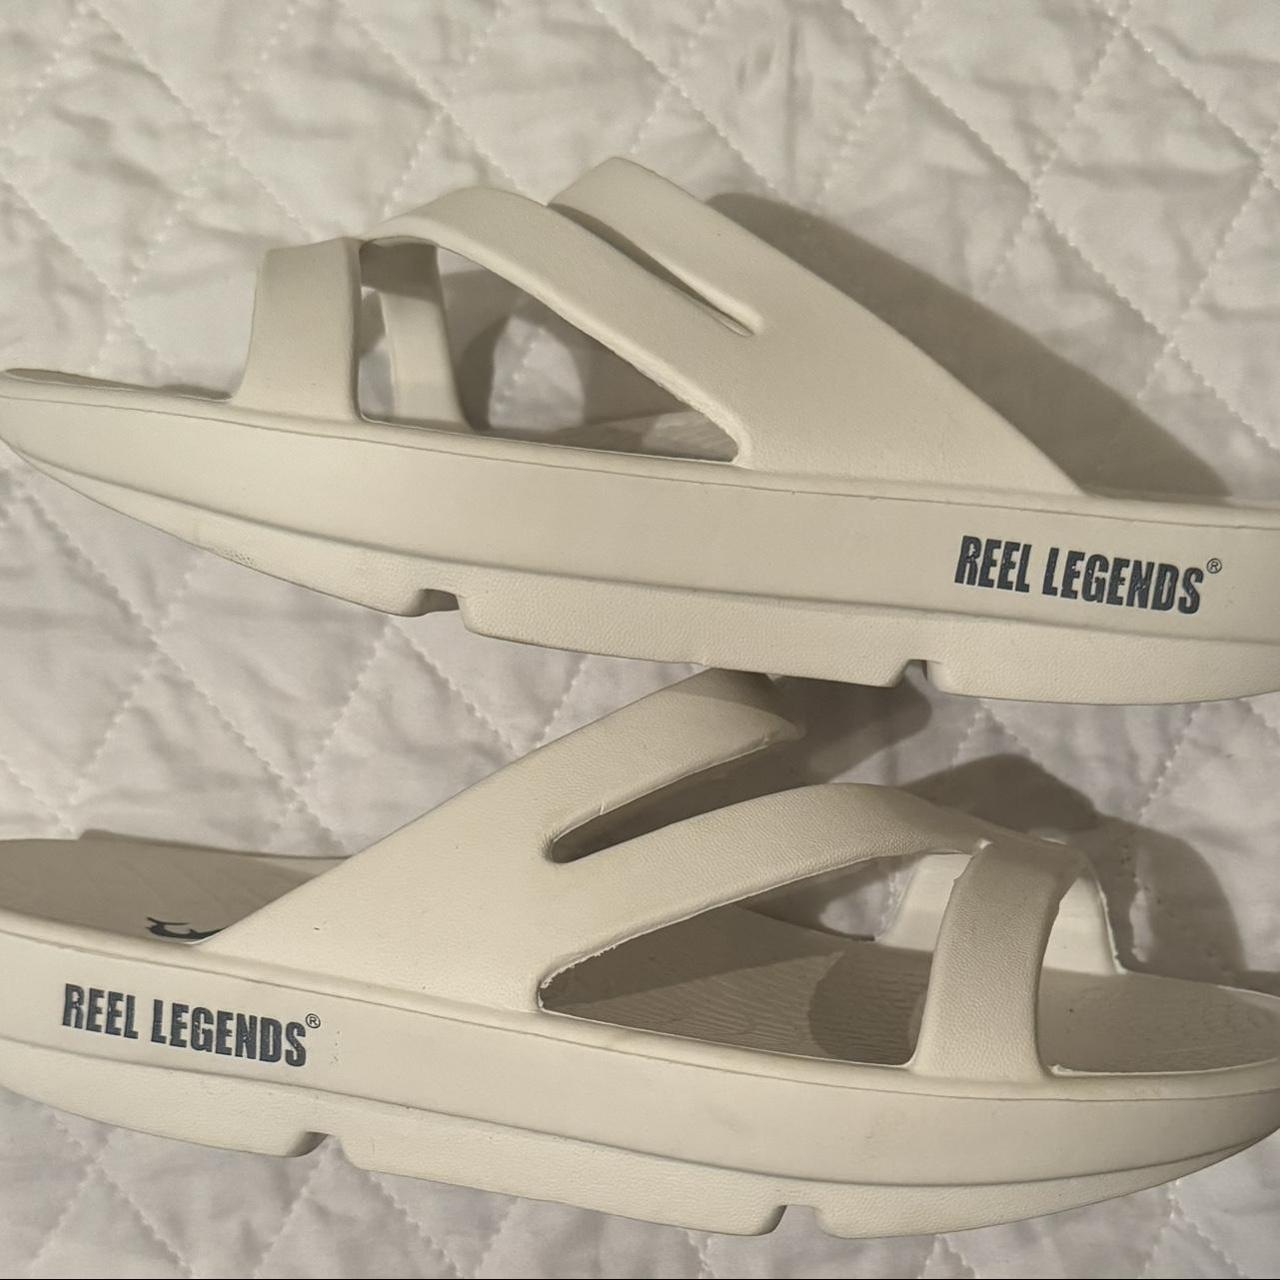  Women's Sandals - Reel Legends / Women's Sandals